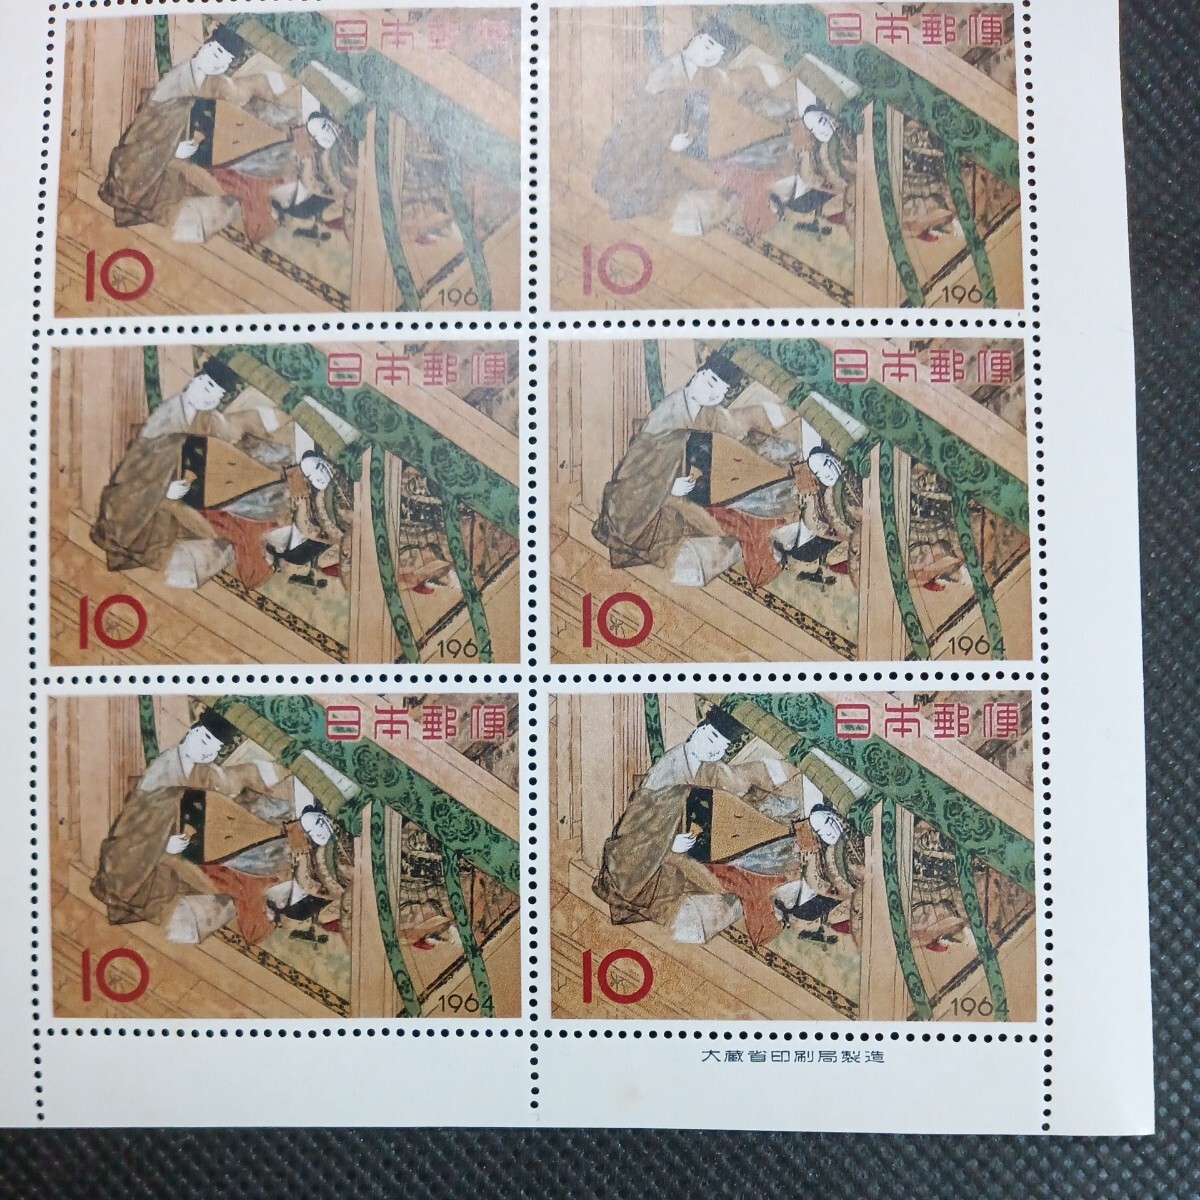 銘版（大蔵省印刷局製造)1964切手趣味週間 源氏物語 宿木 10円切手10連ブロックの画像3